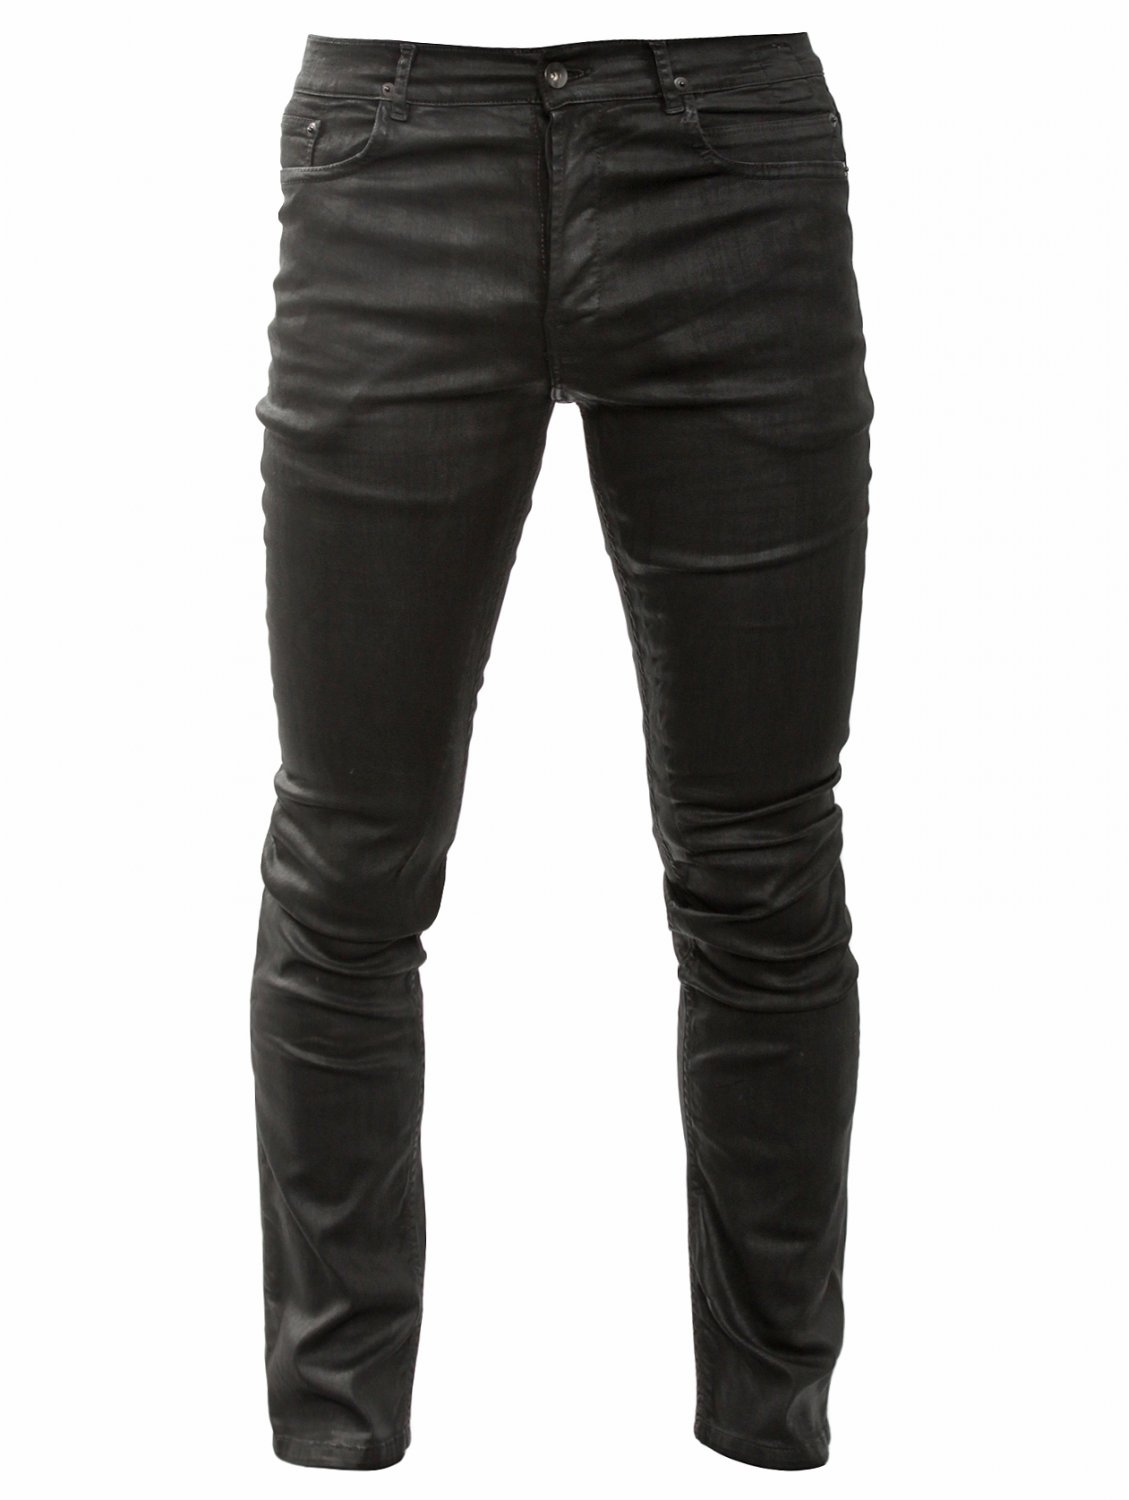 Rick Owens Drkshdw Berlin Cut Wax Jeans in Black for Men - Lyst